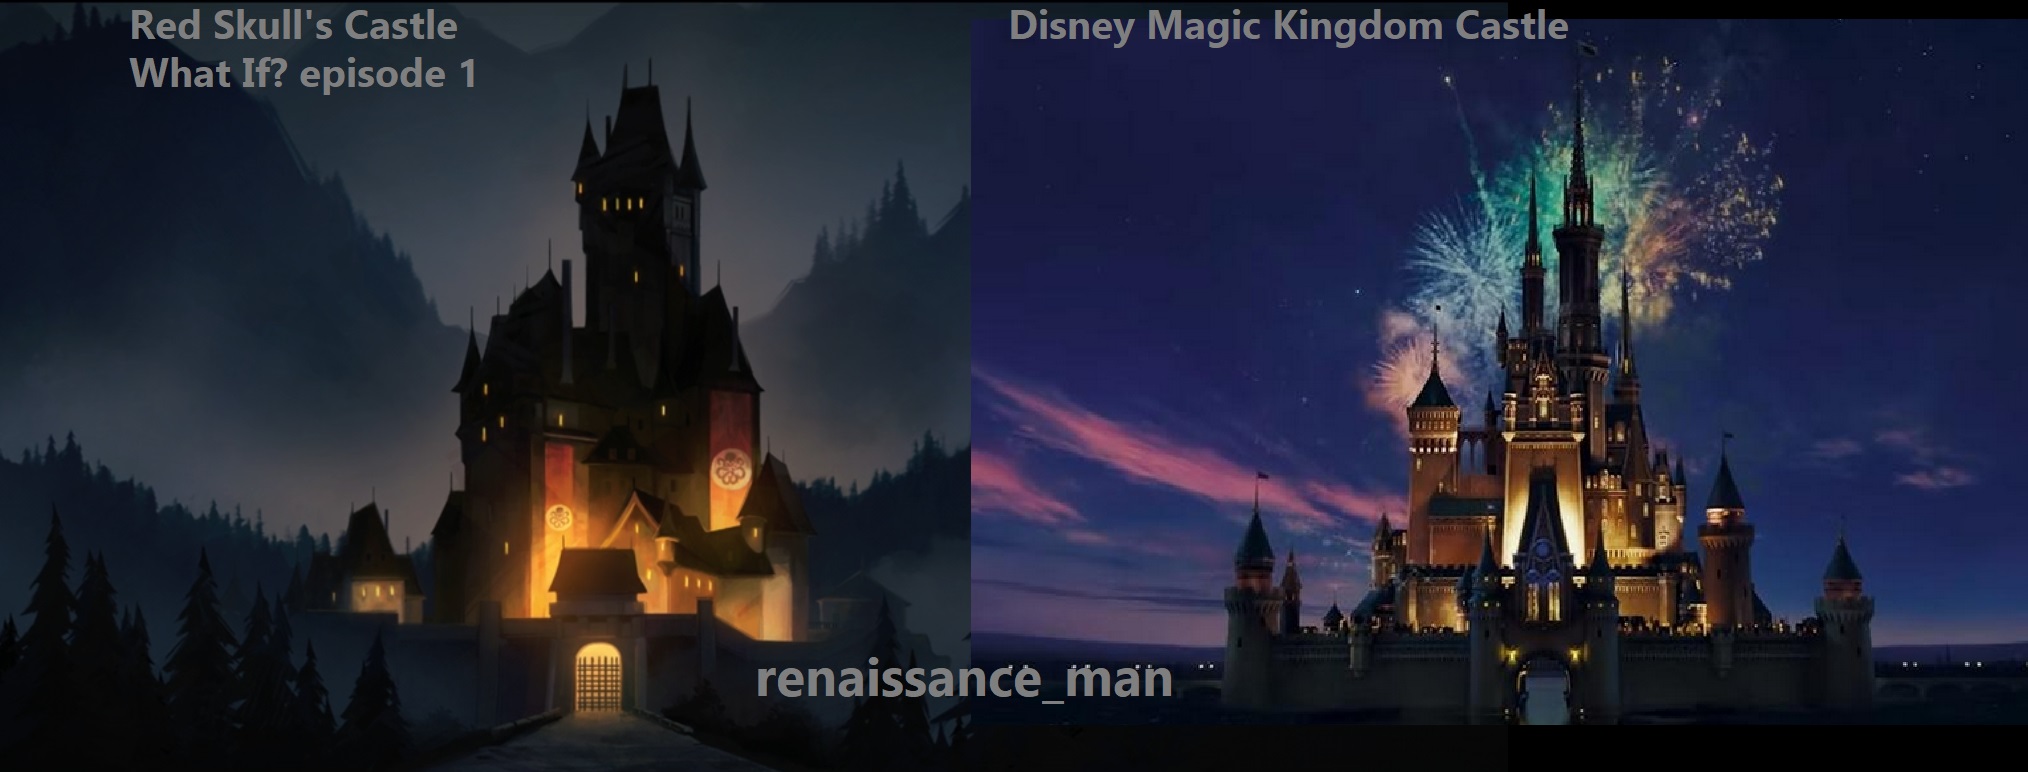 Red Skull Disney Castle.jpg